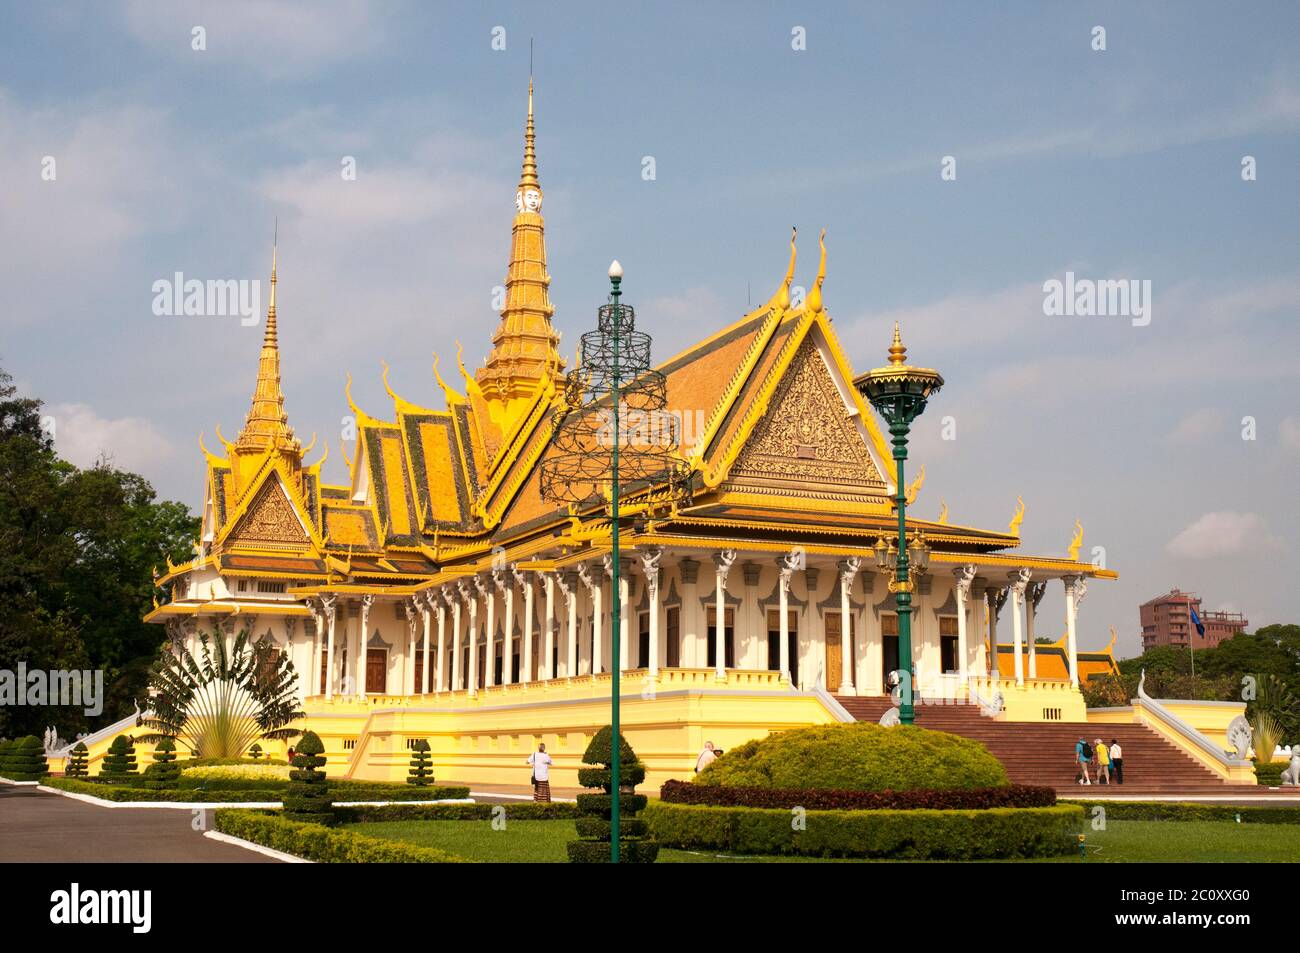 Royal Palace in Phnom Penh, Cambodia Stock Photo